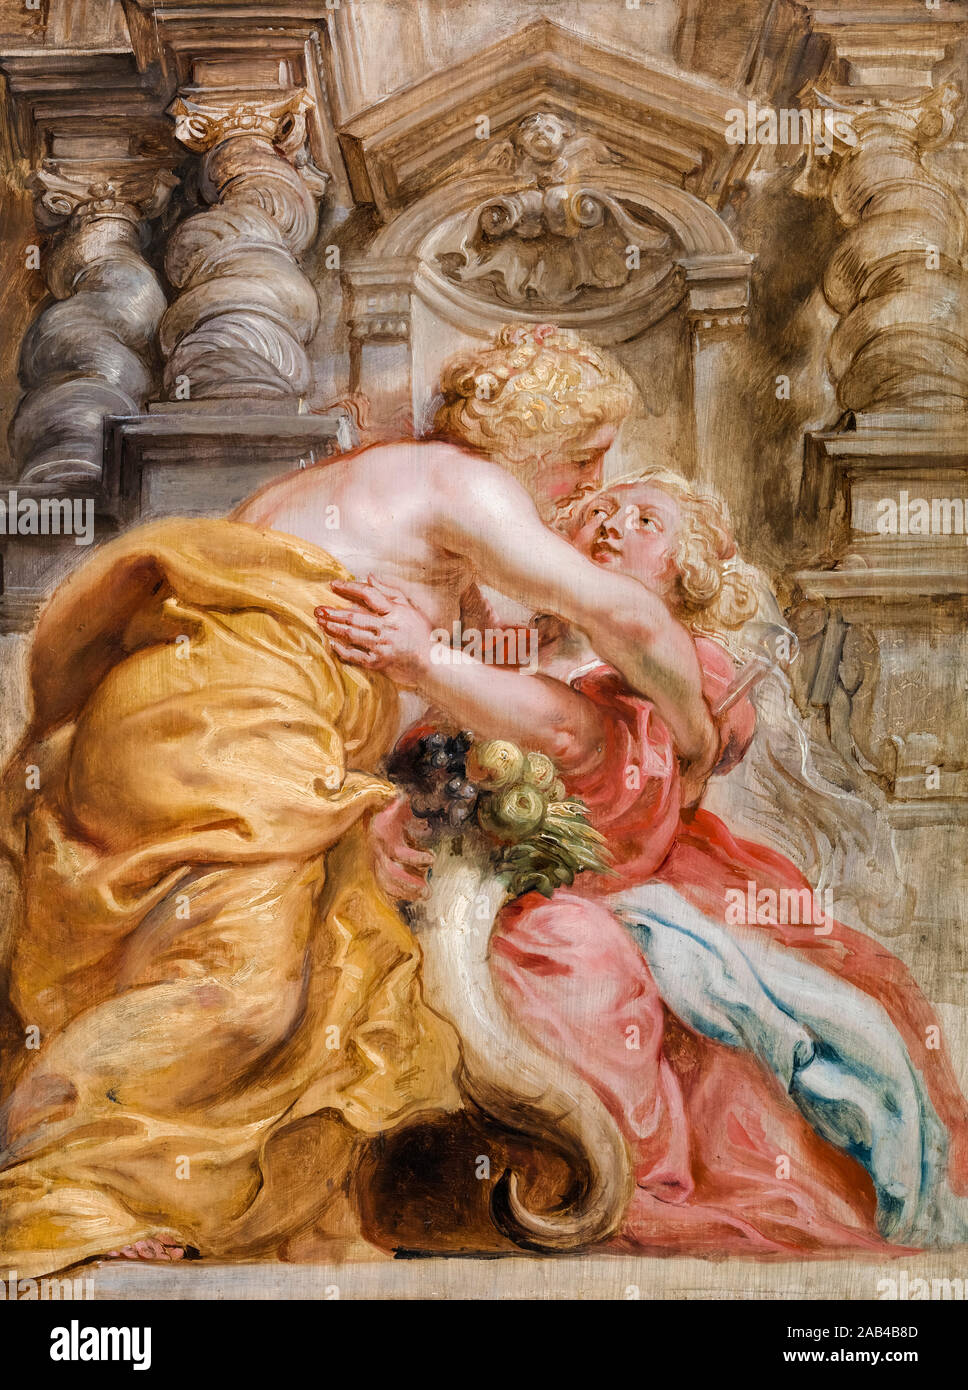 Peter Paul Rubens, la paix englobant beaucoup, peinture, 1633-1634 Banque D'Images